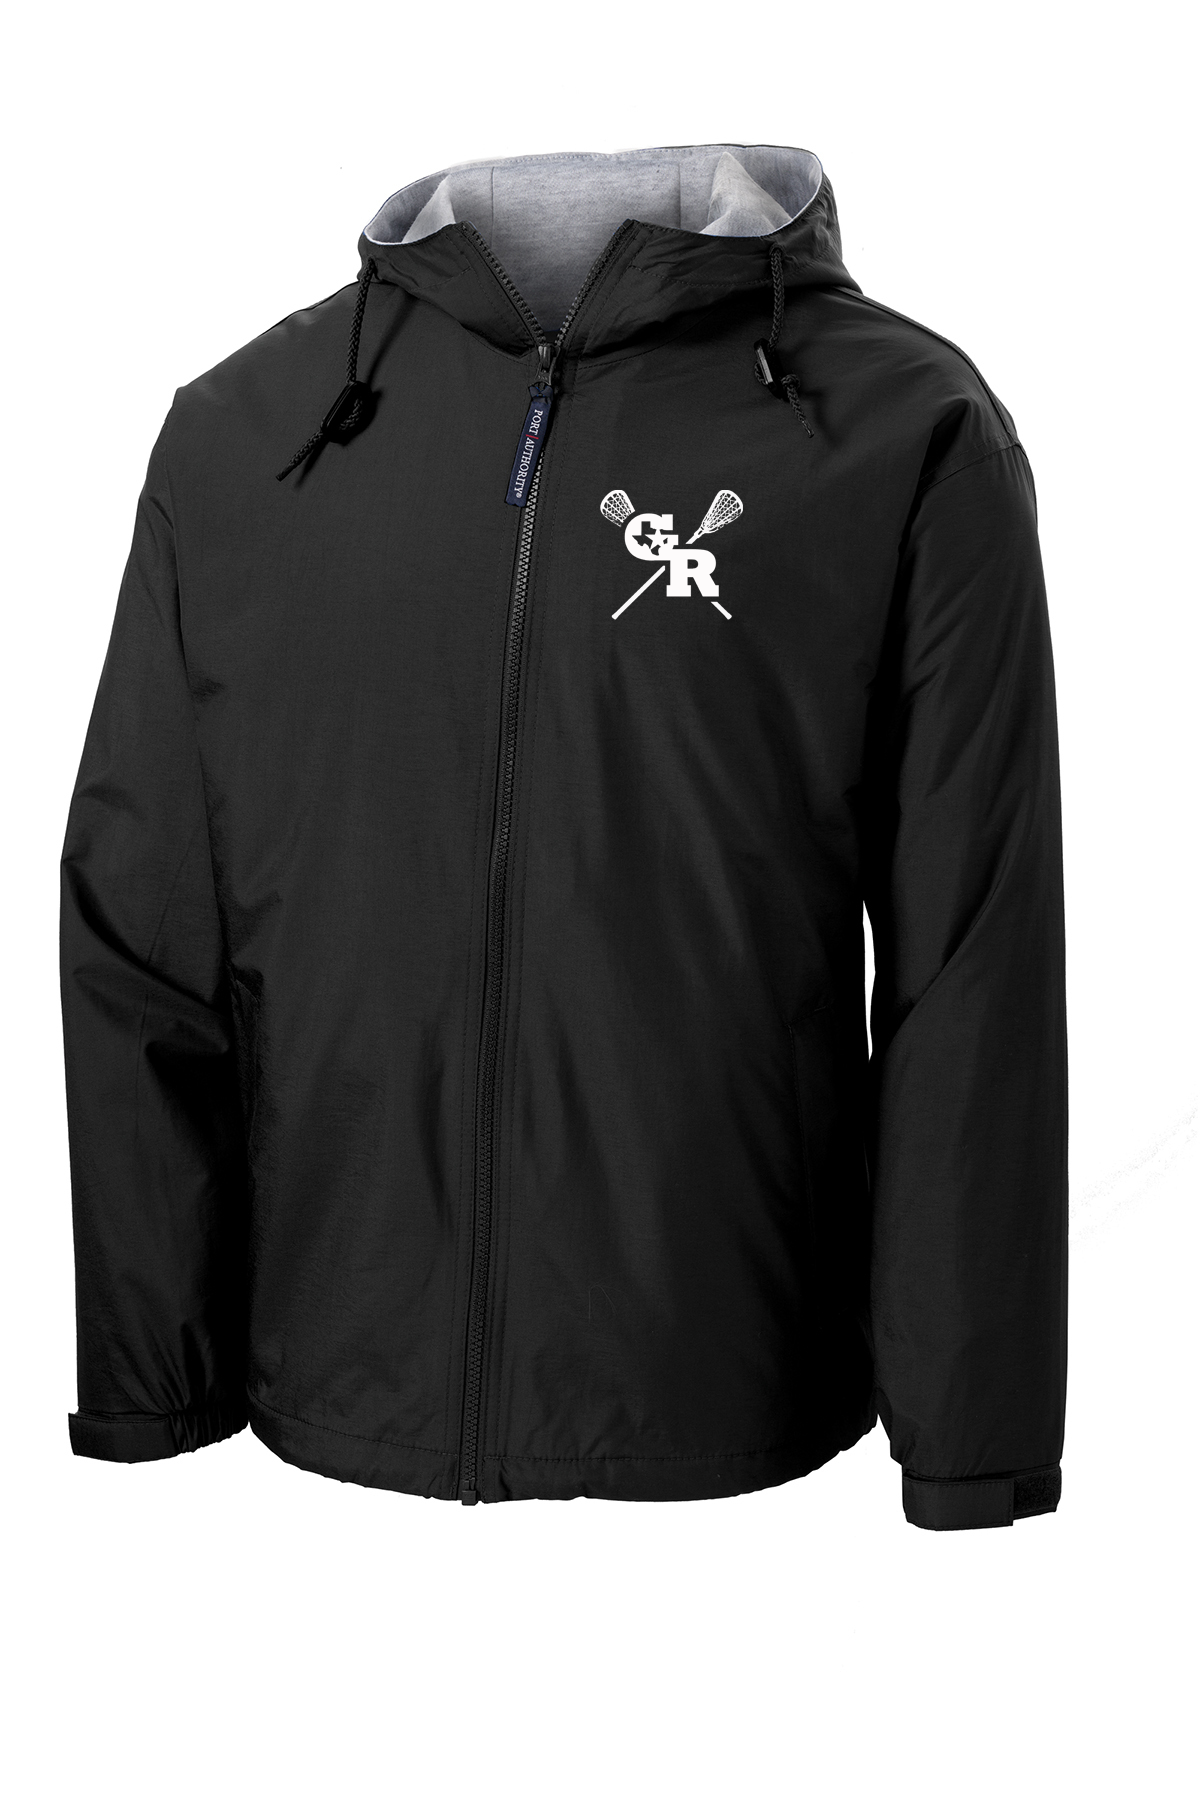 GR Longhorns Lacrosse Hooded Jacket